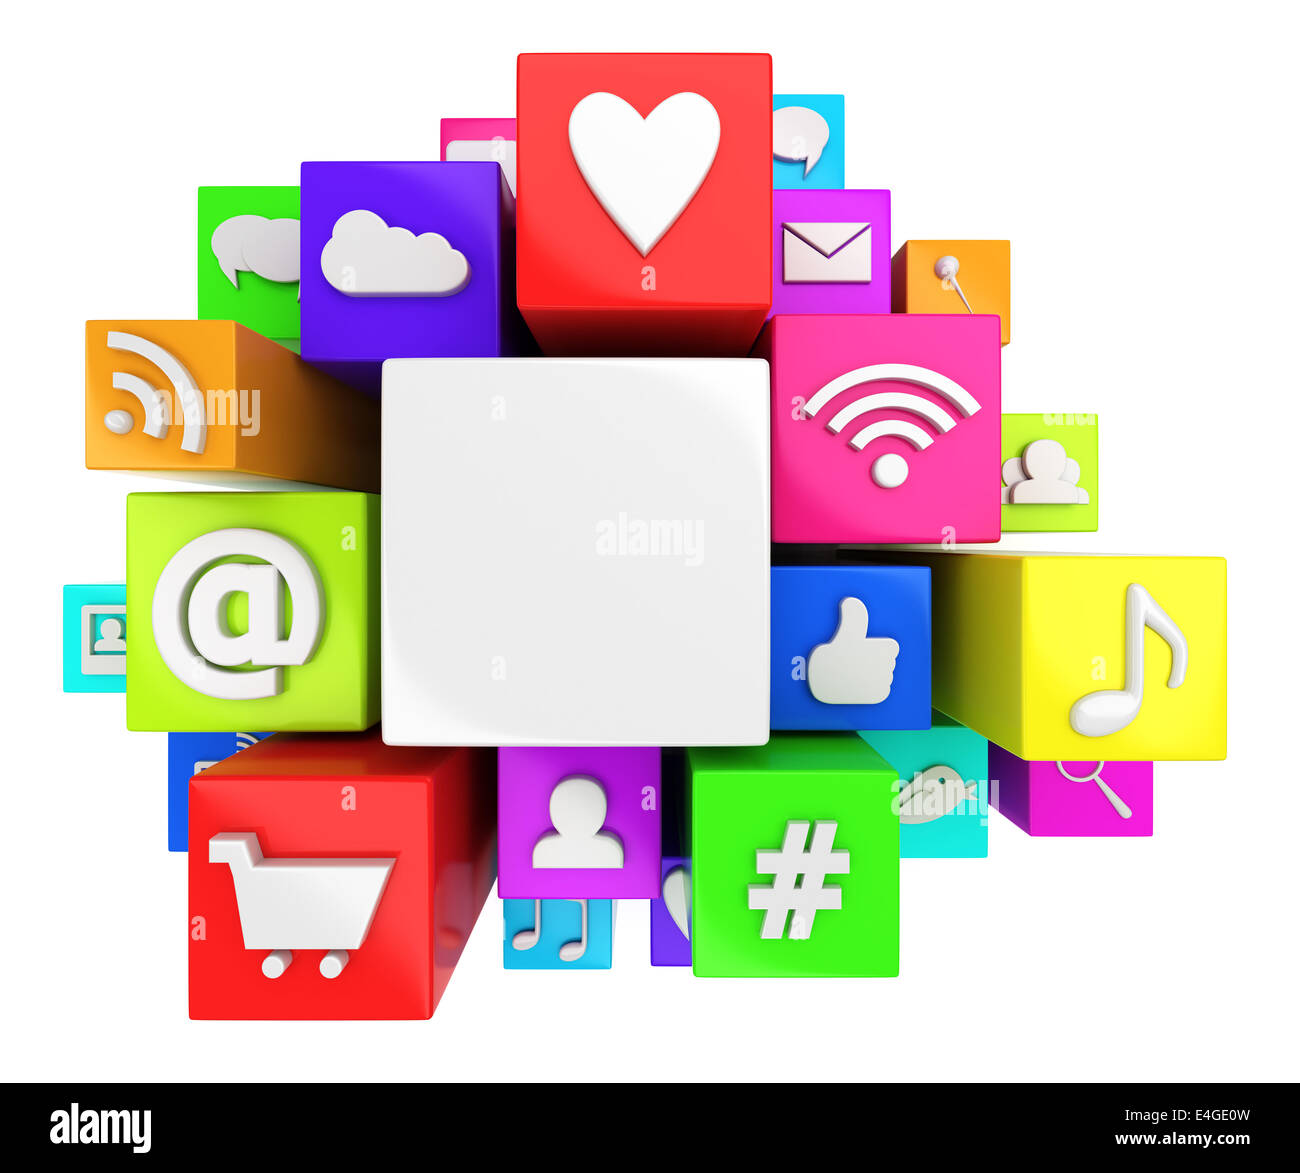 Social media symbols Stock Photo